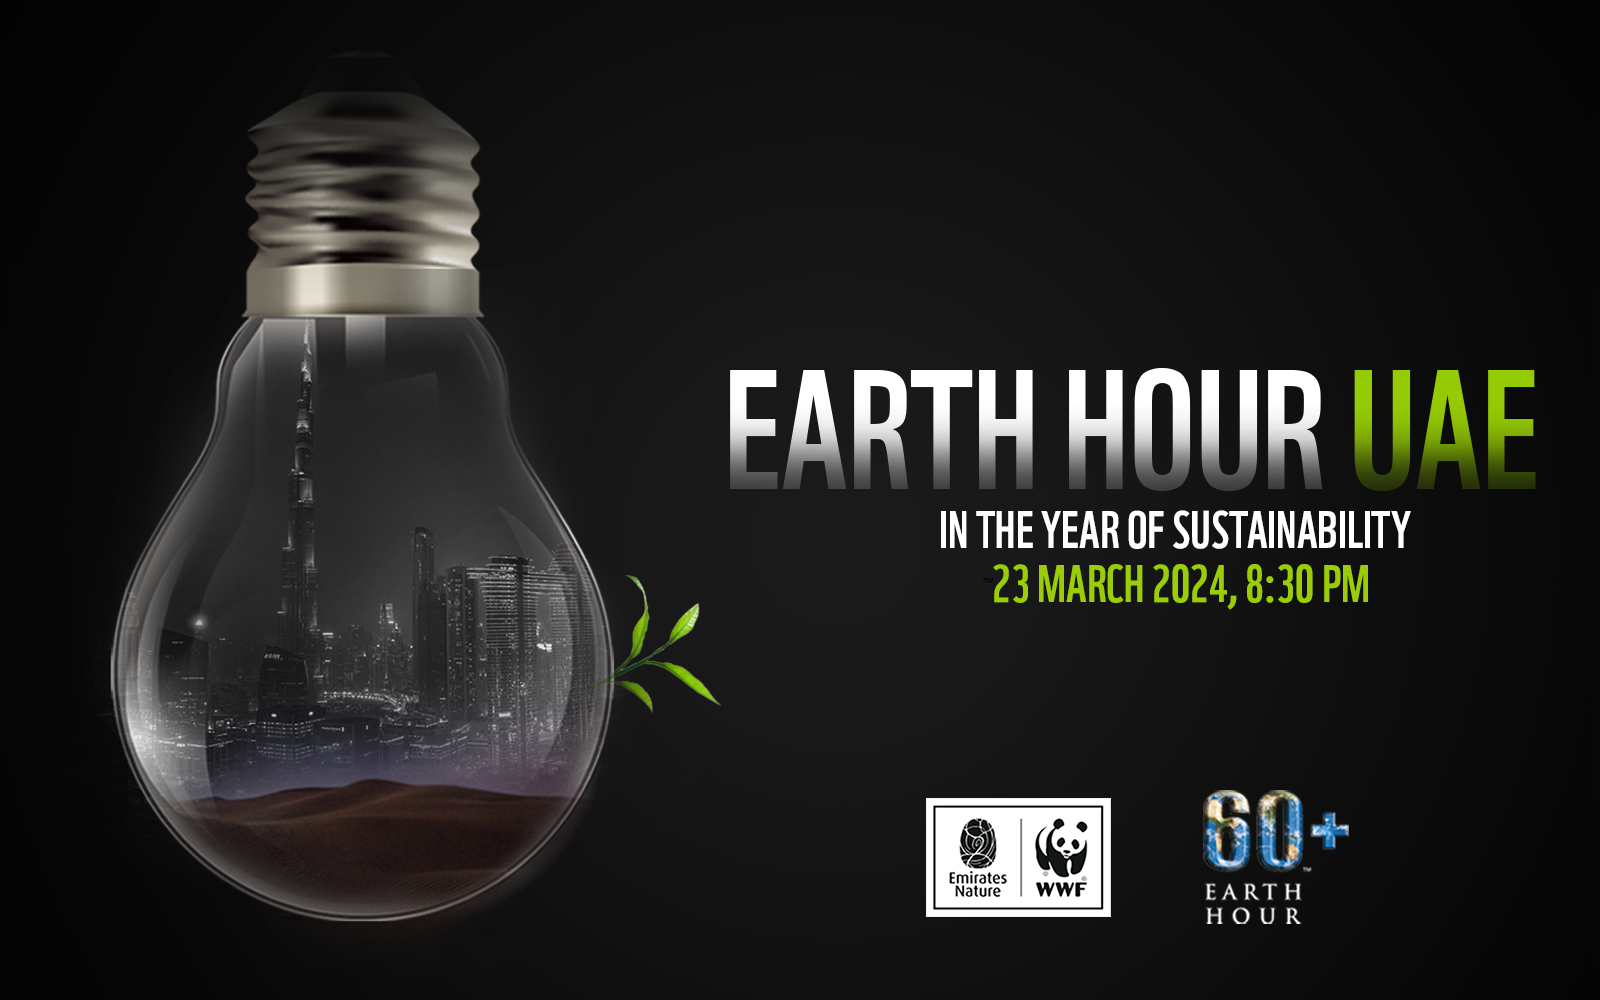 Earth Hour 2024 UAE